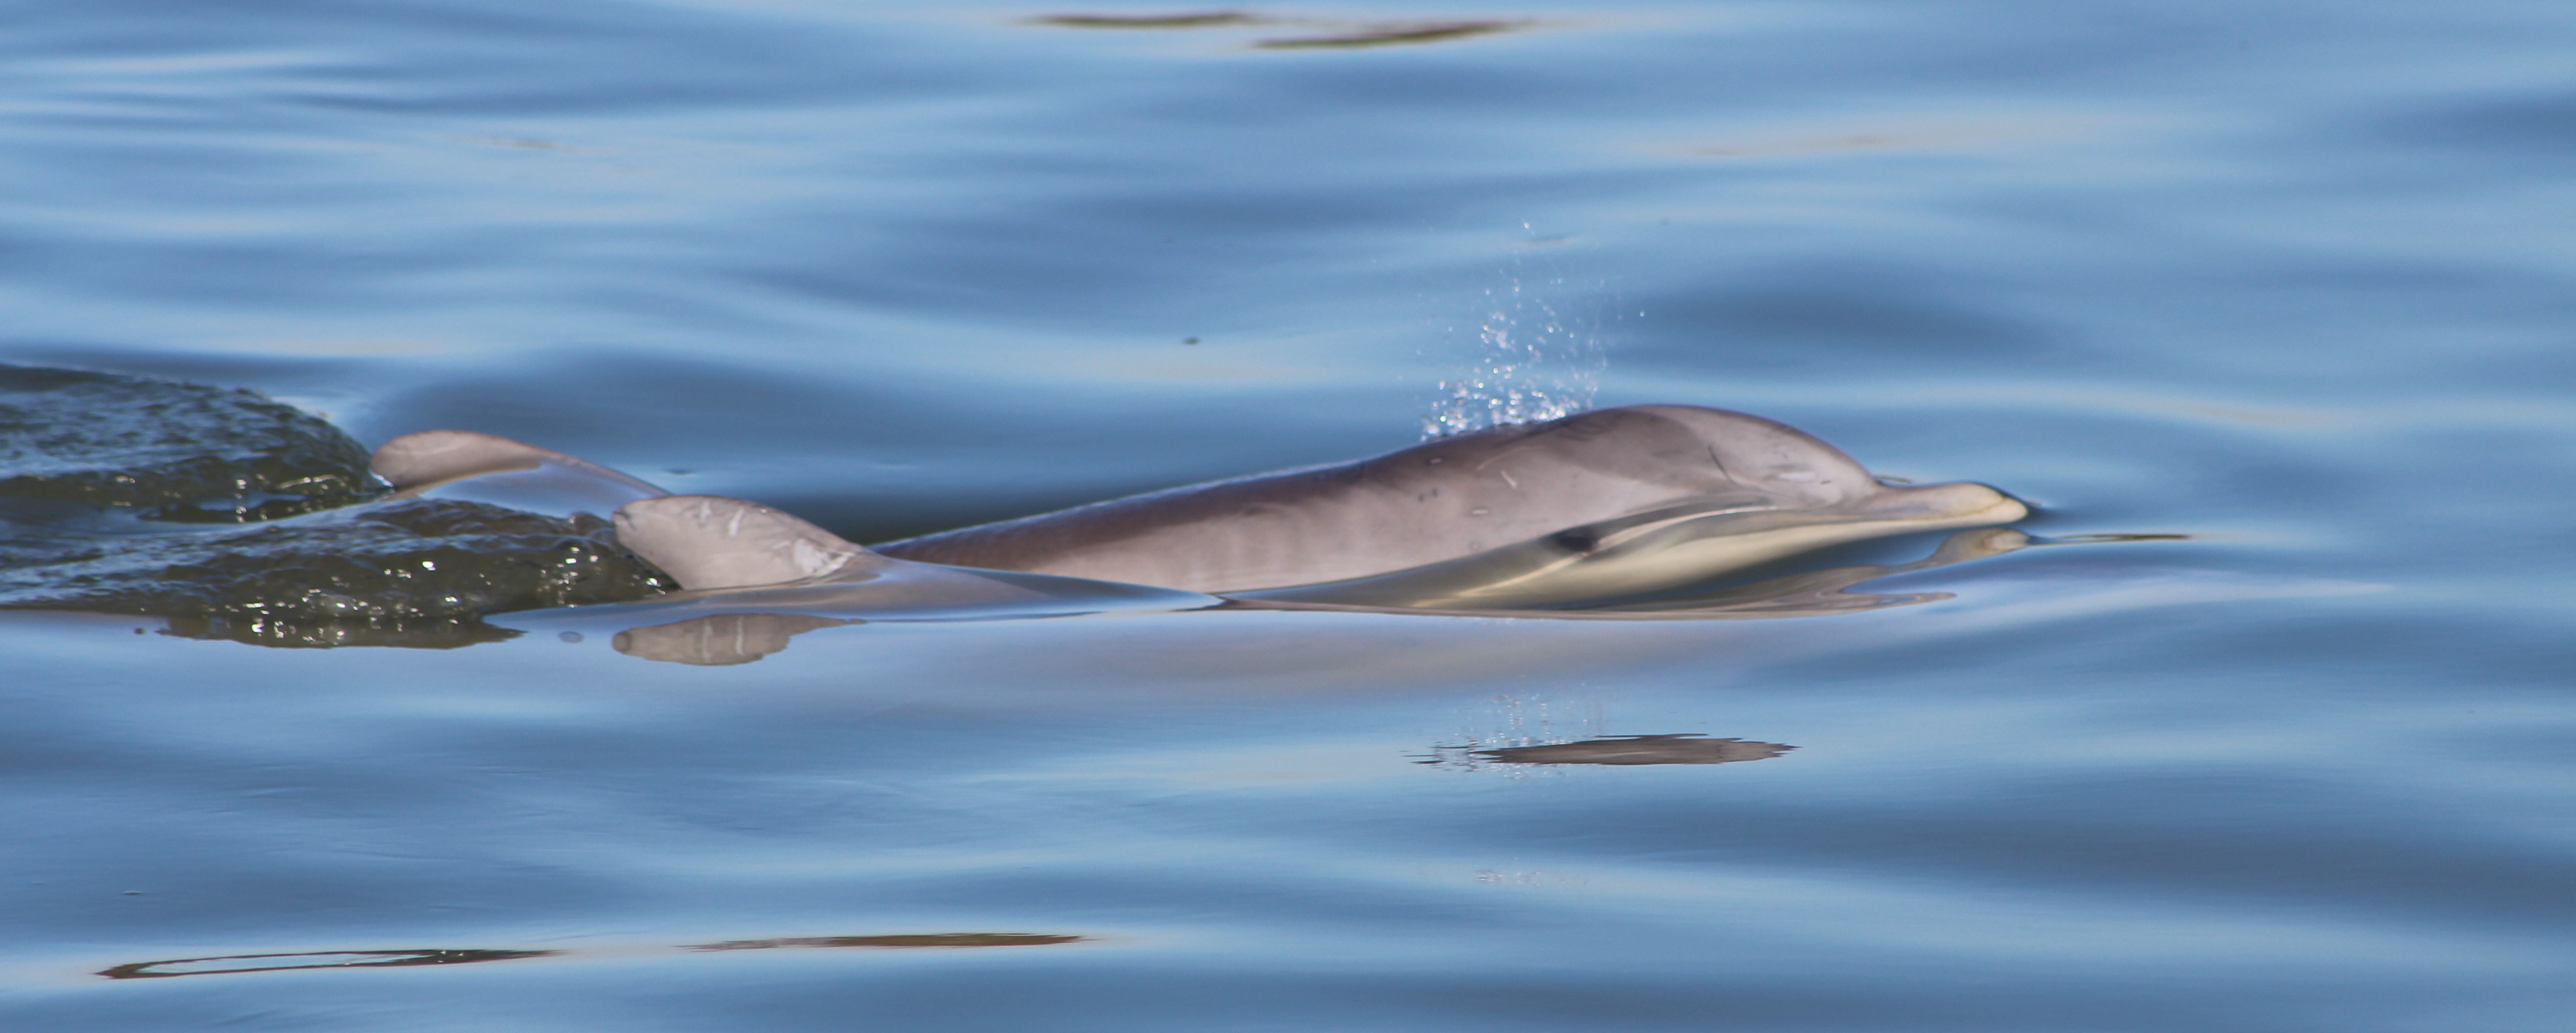 charleston sc dolphin tour